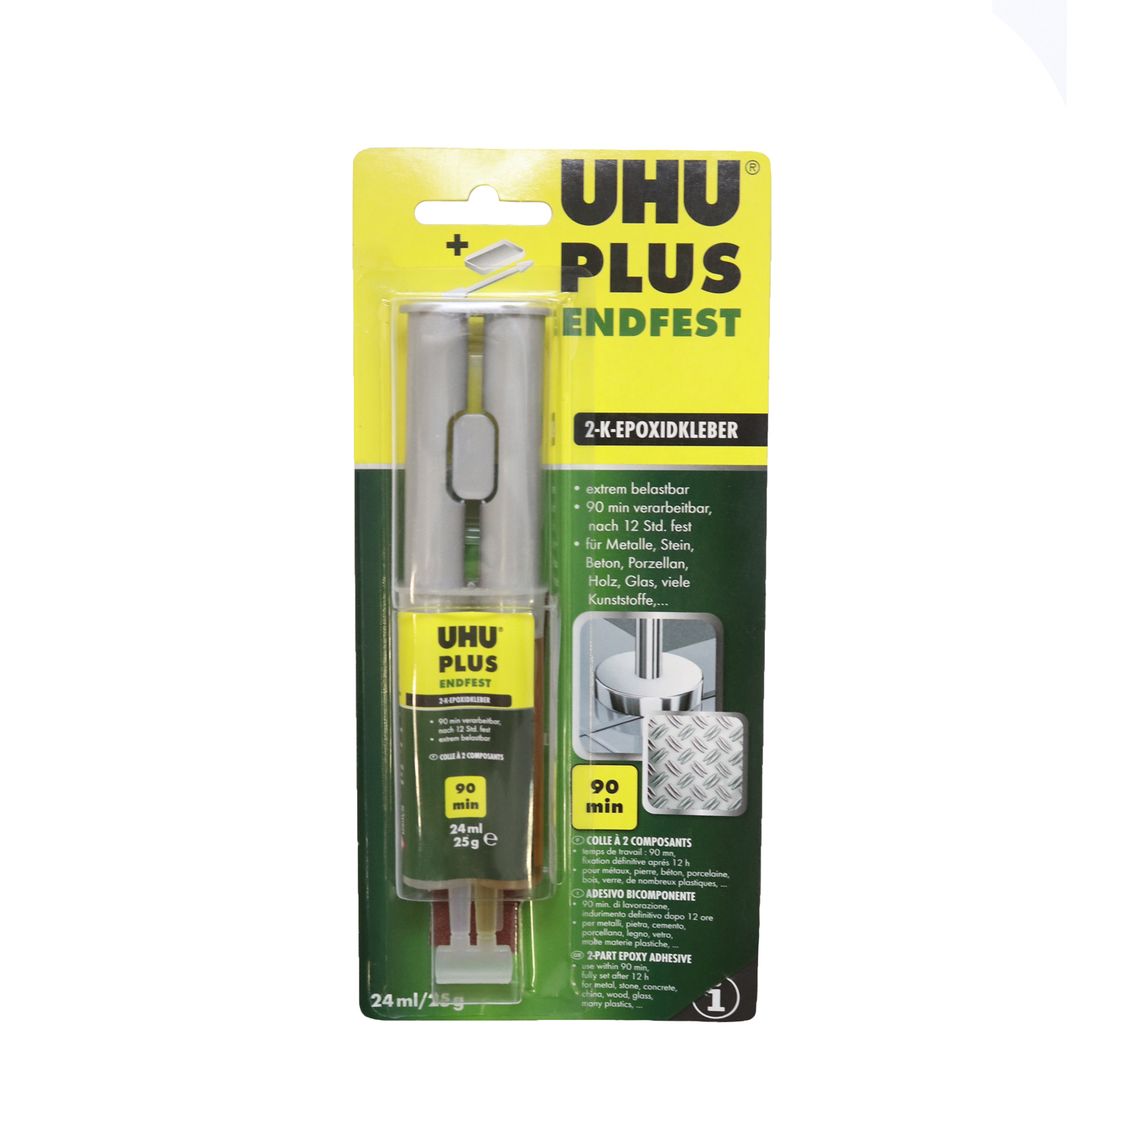 Клей UHU эпоксидный универсальный PLUS ENDFEST 90 мин., шприц 25 г. арт. 45585 (уп. 1 набор)